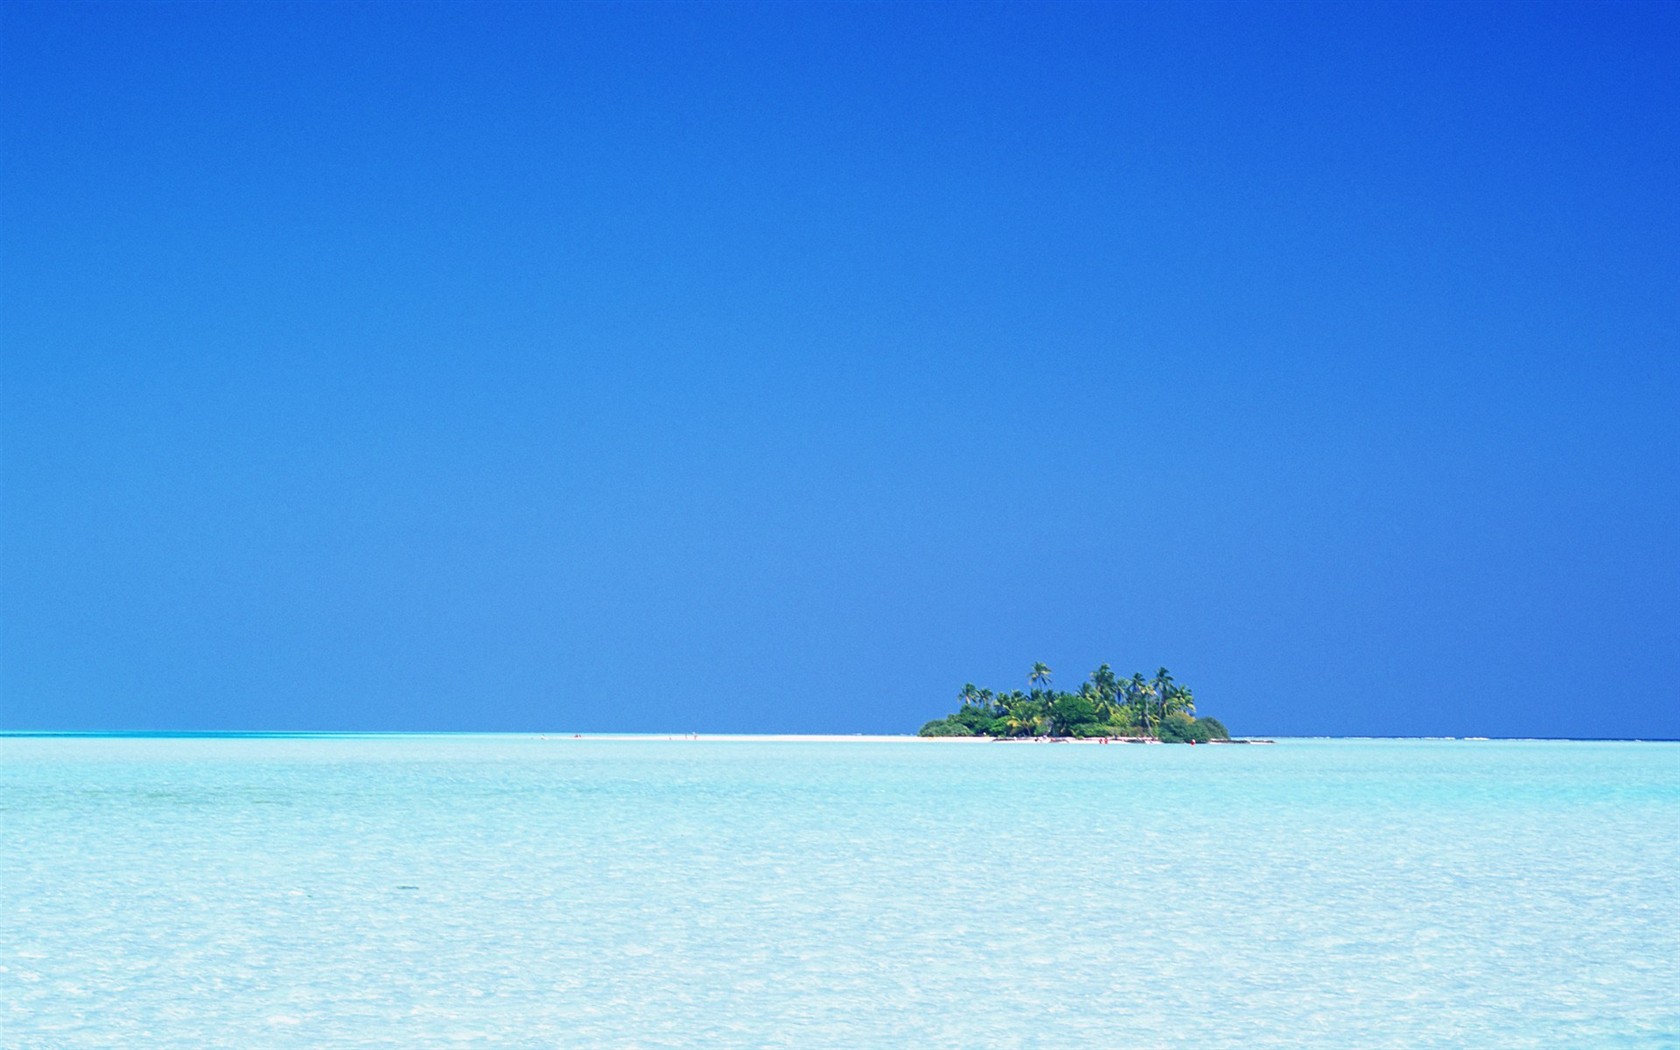 Maledivy vody a modrou oblohu #21 - 1680x1050